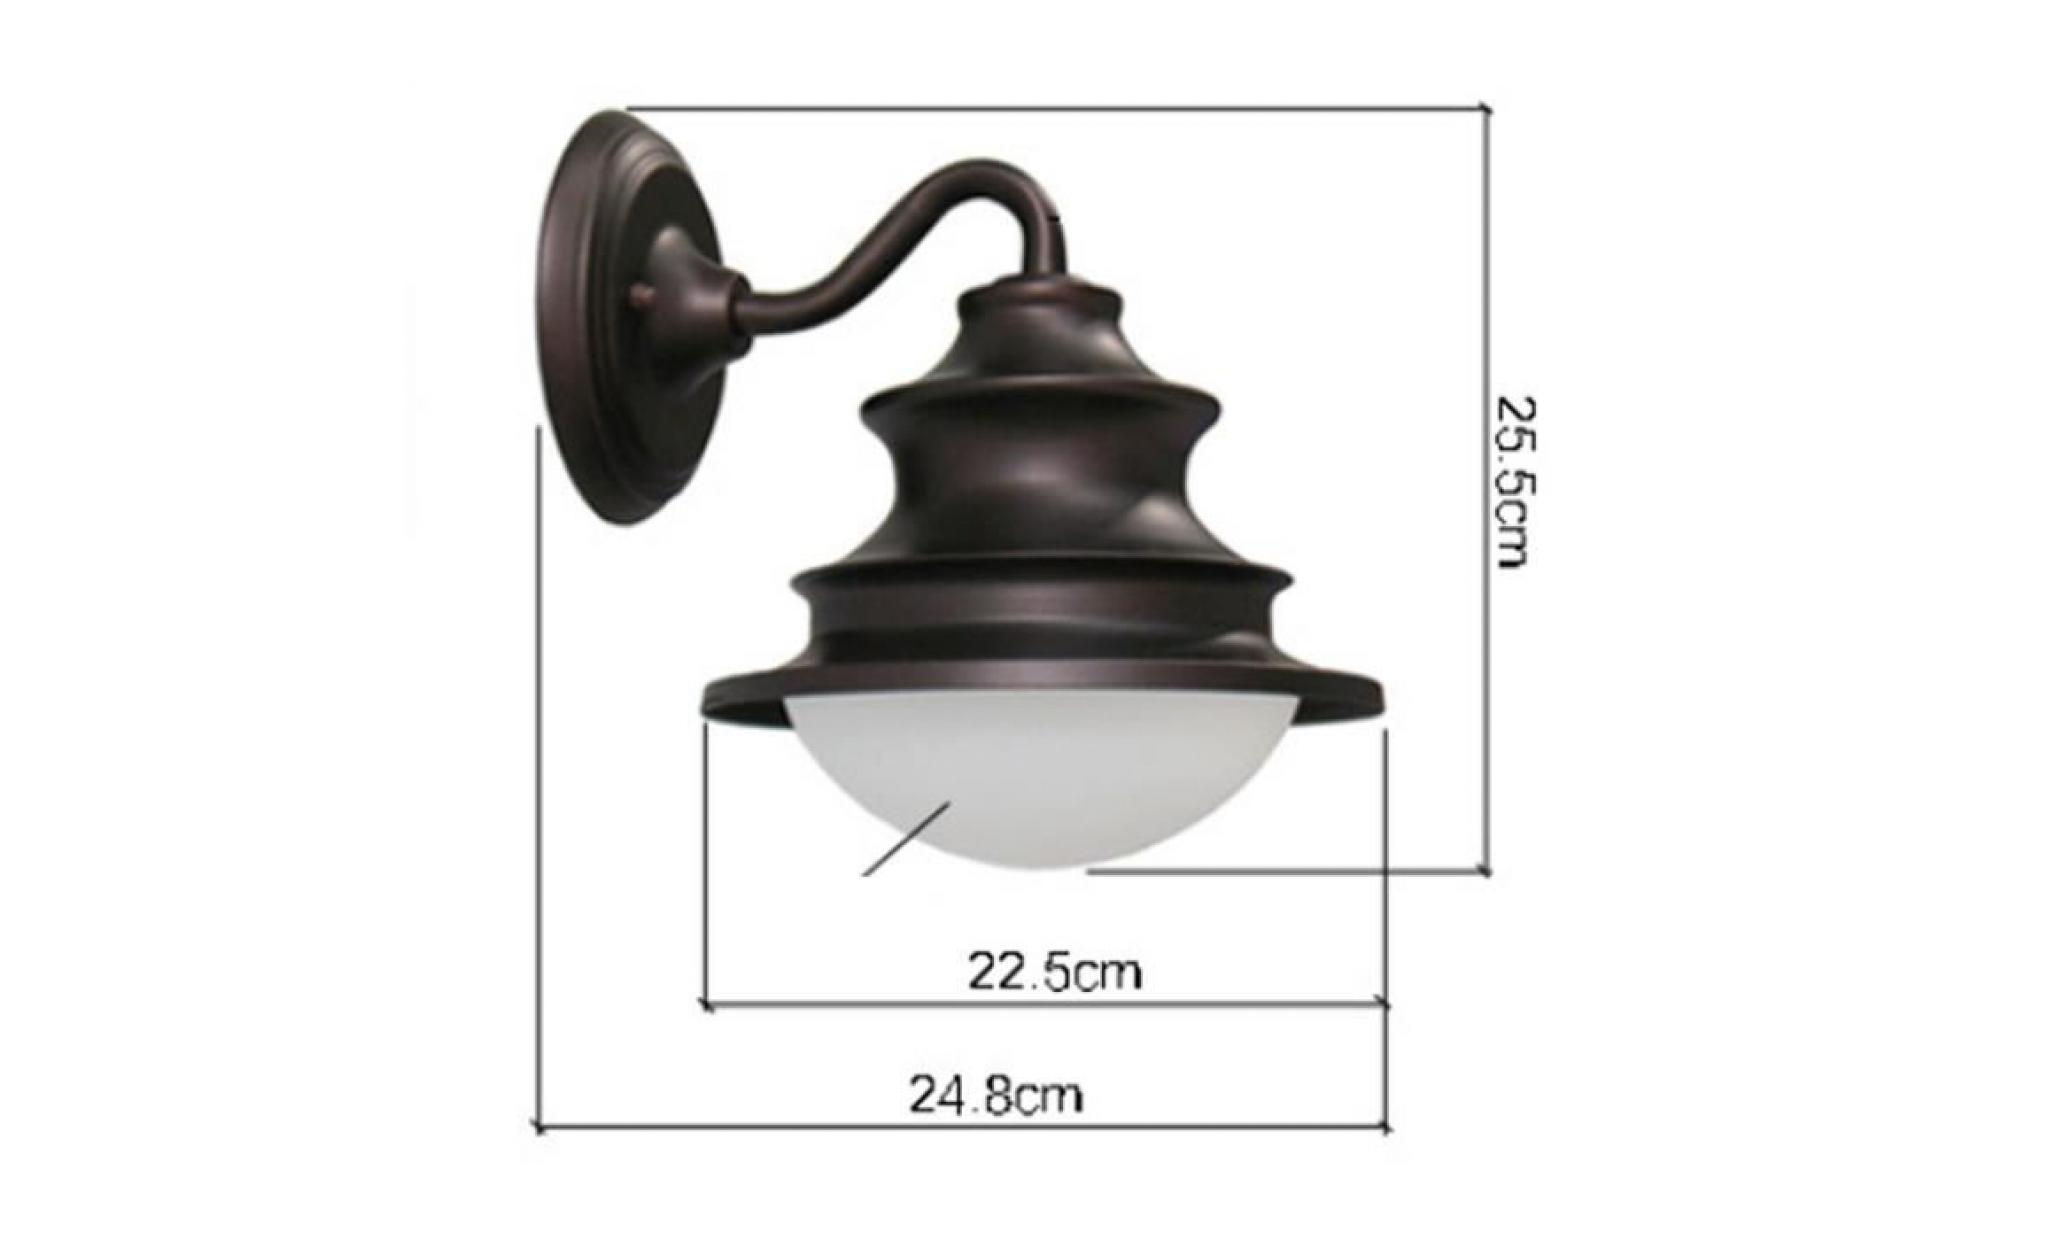 stoex® applique murale vintage lampe industrielle fer metal lampe imperméable extérieur  mur de feu 24.8cm x 25.5cm pas cher